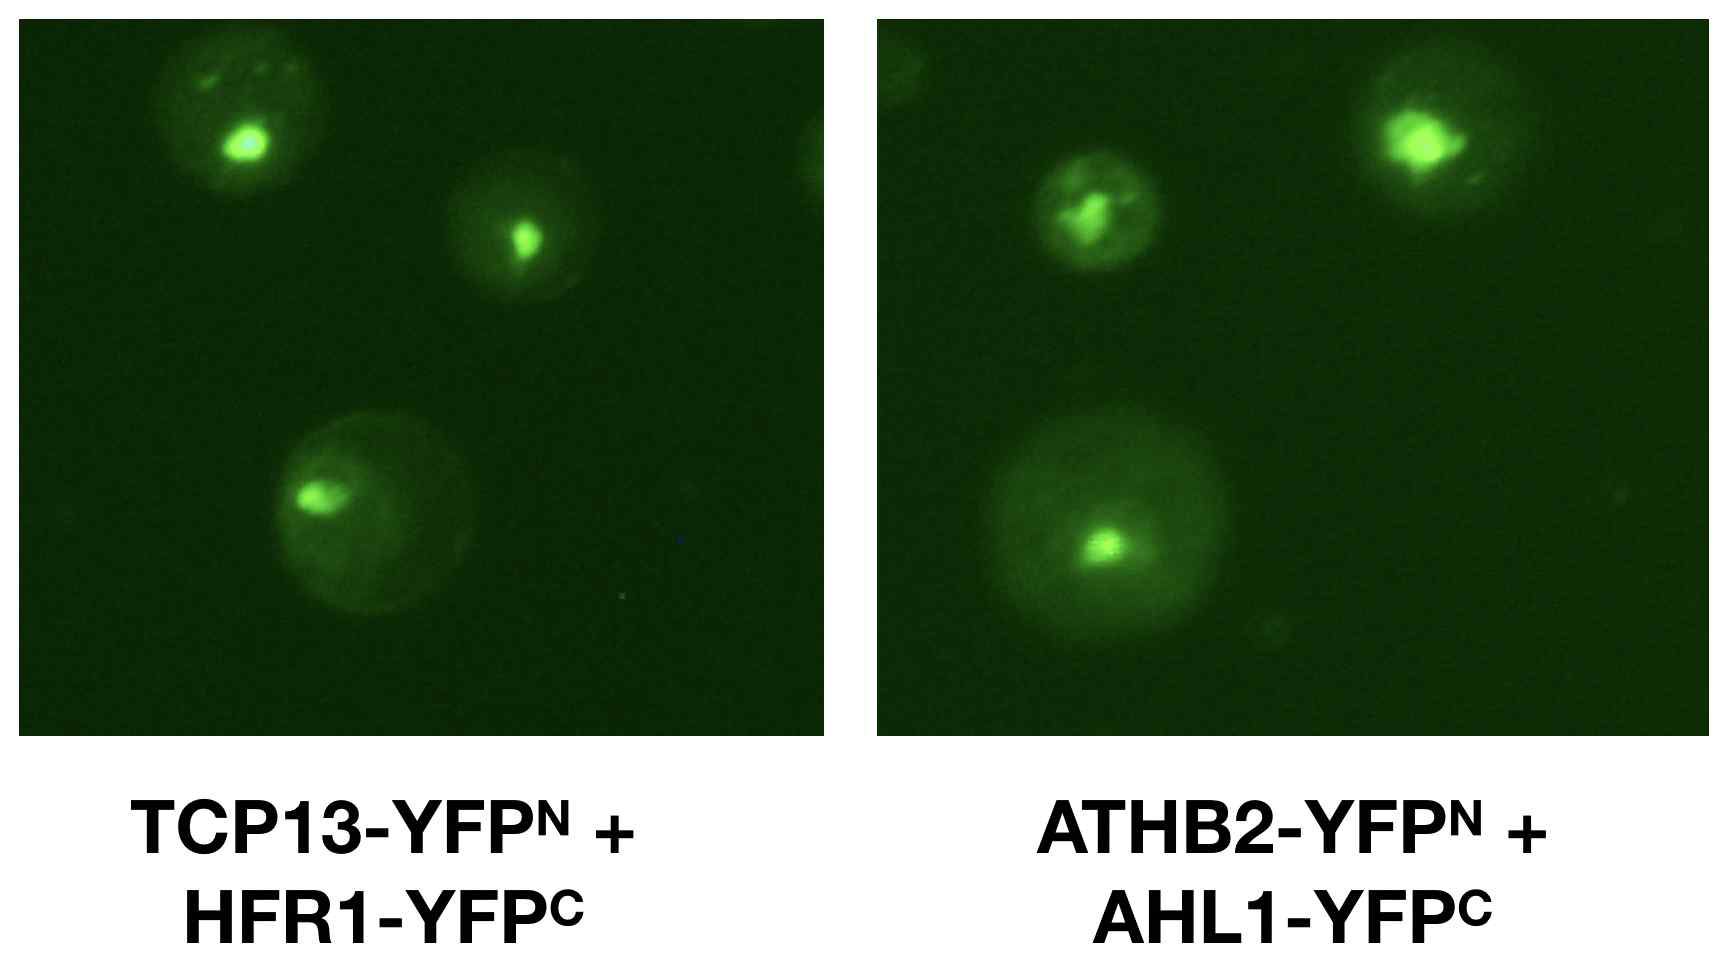 BiFC analysis에 의한 TCP13-HFR1, ATHB2-AHL1 의 특이적 상호결합 확인